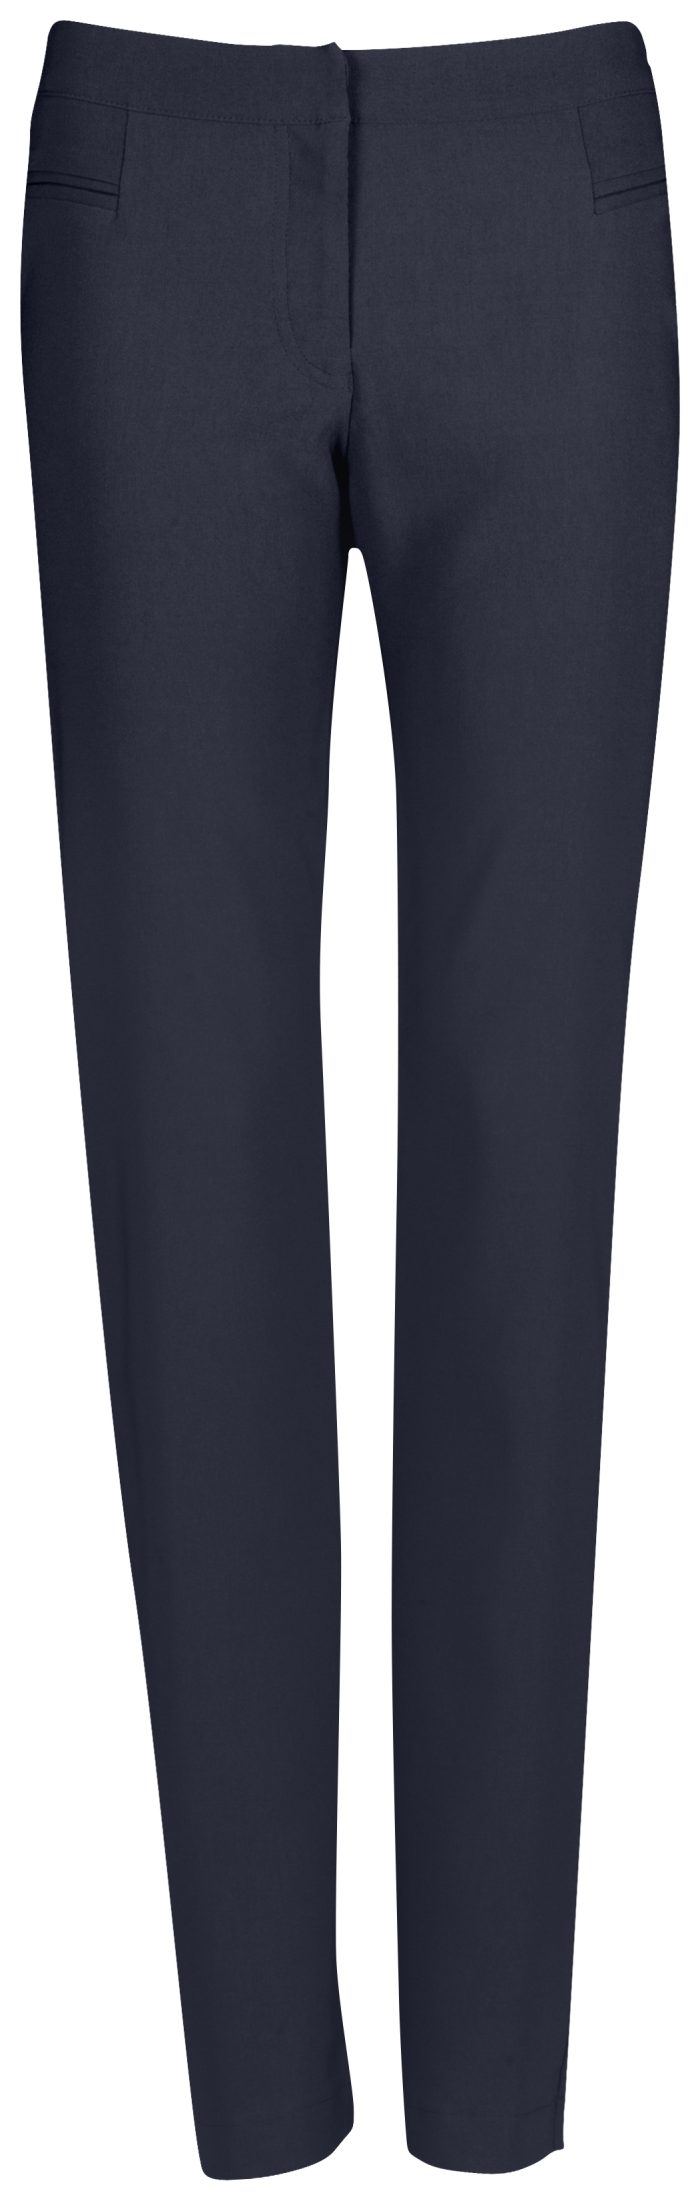 Ladies Cambridge Stretch Pants - Navy